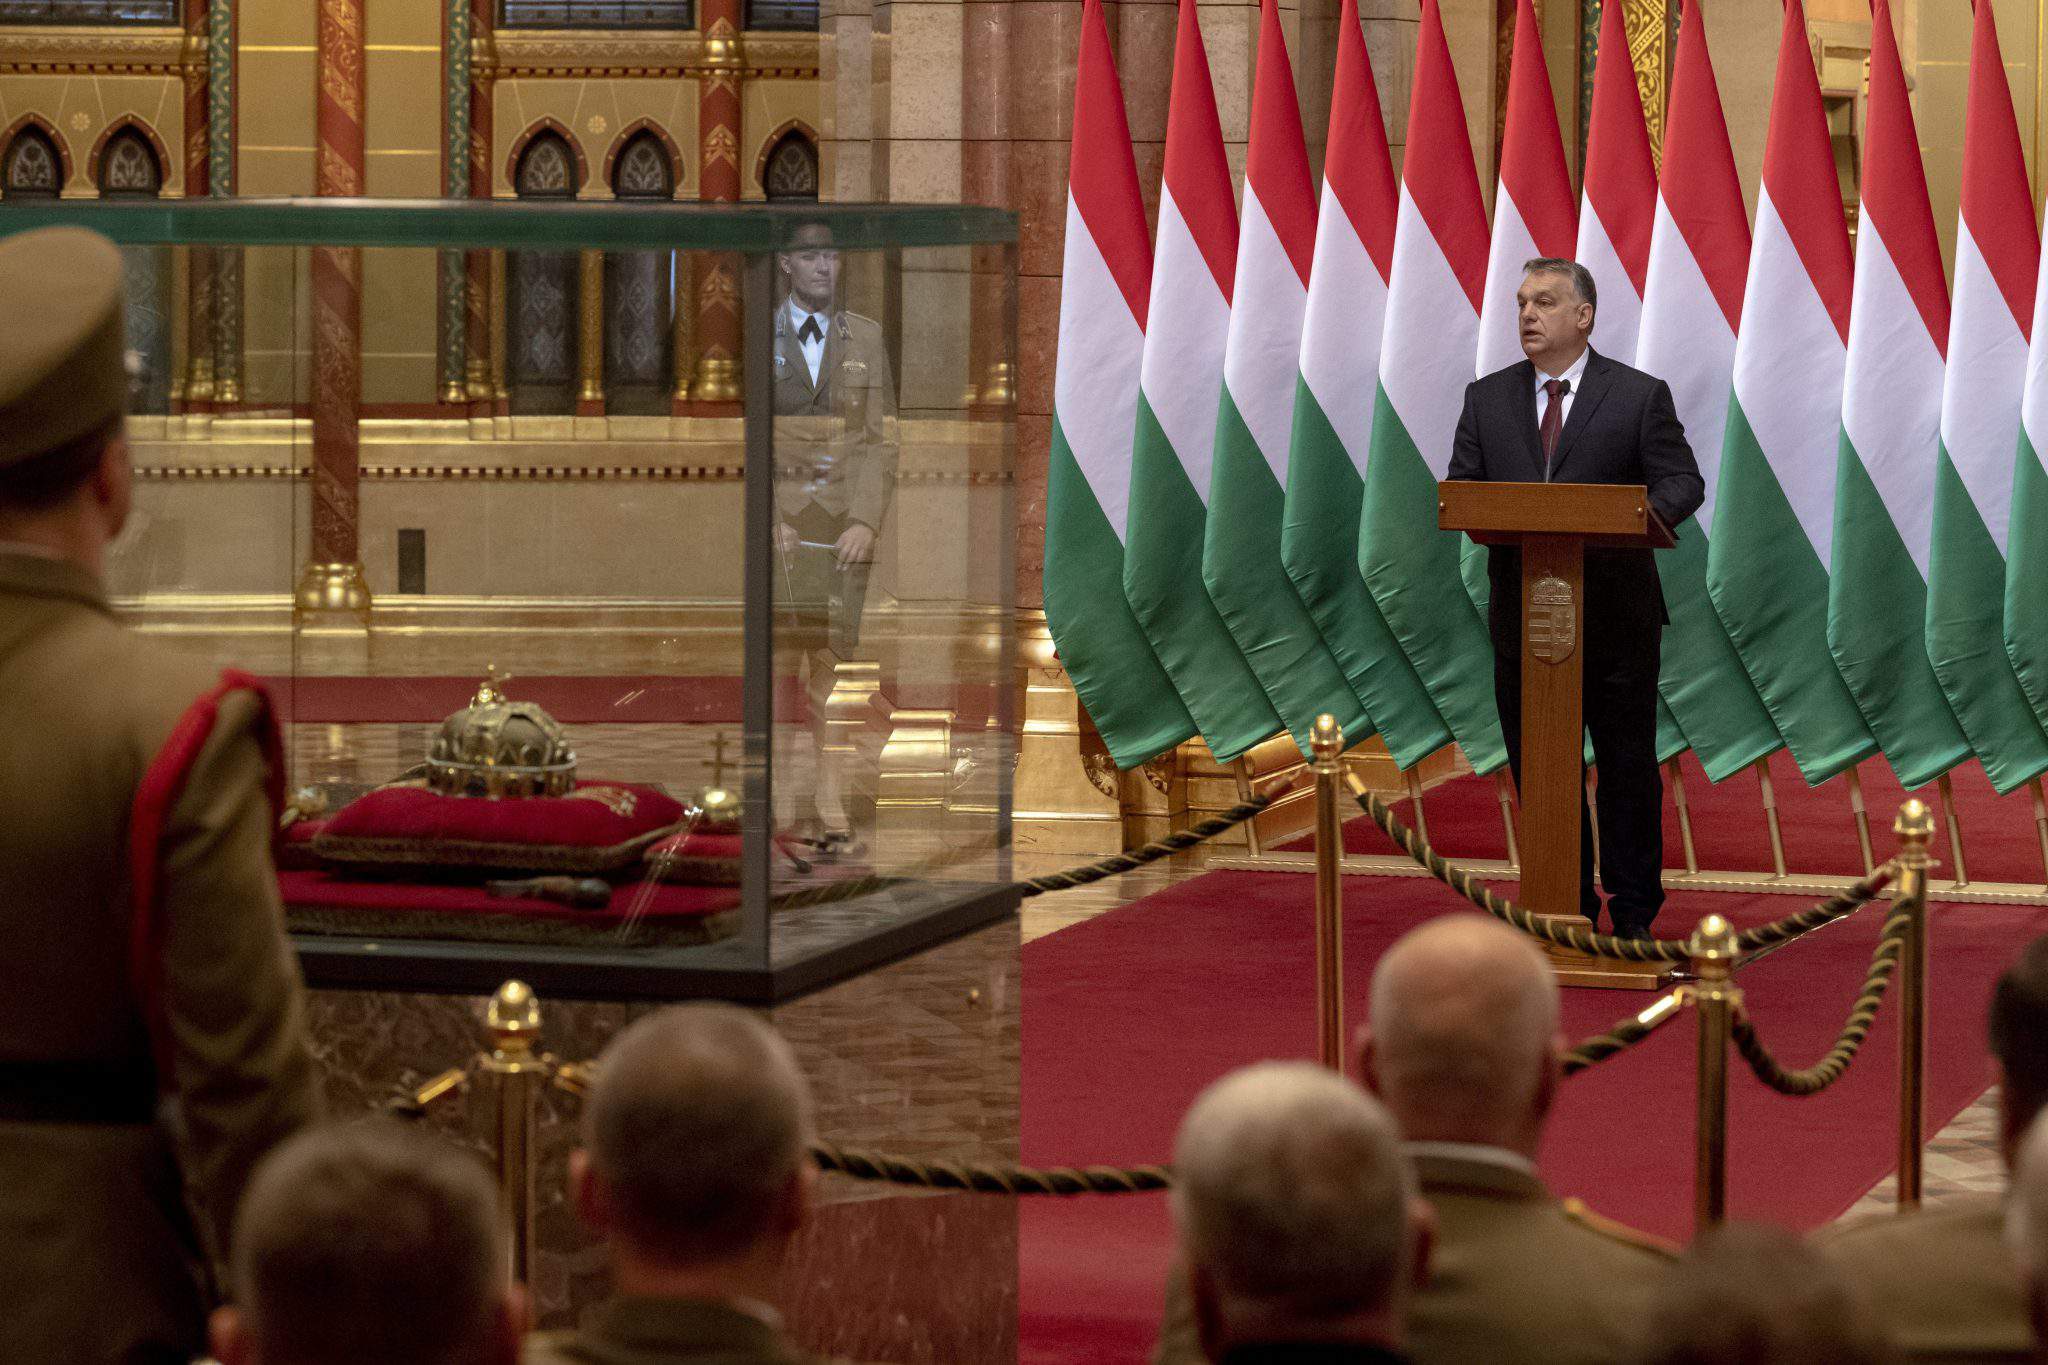 Viktor Orbán 议会辩护